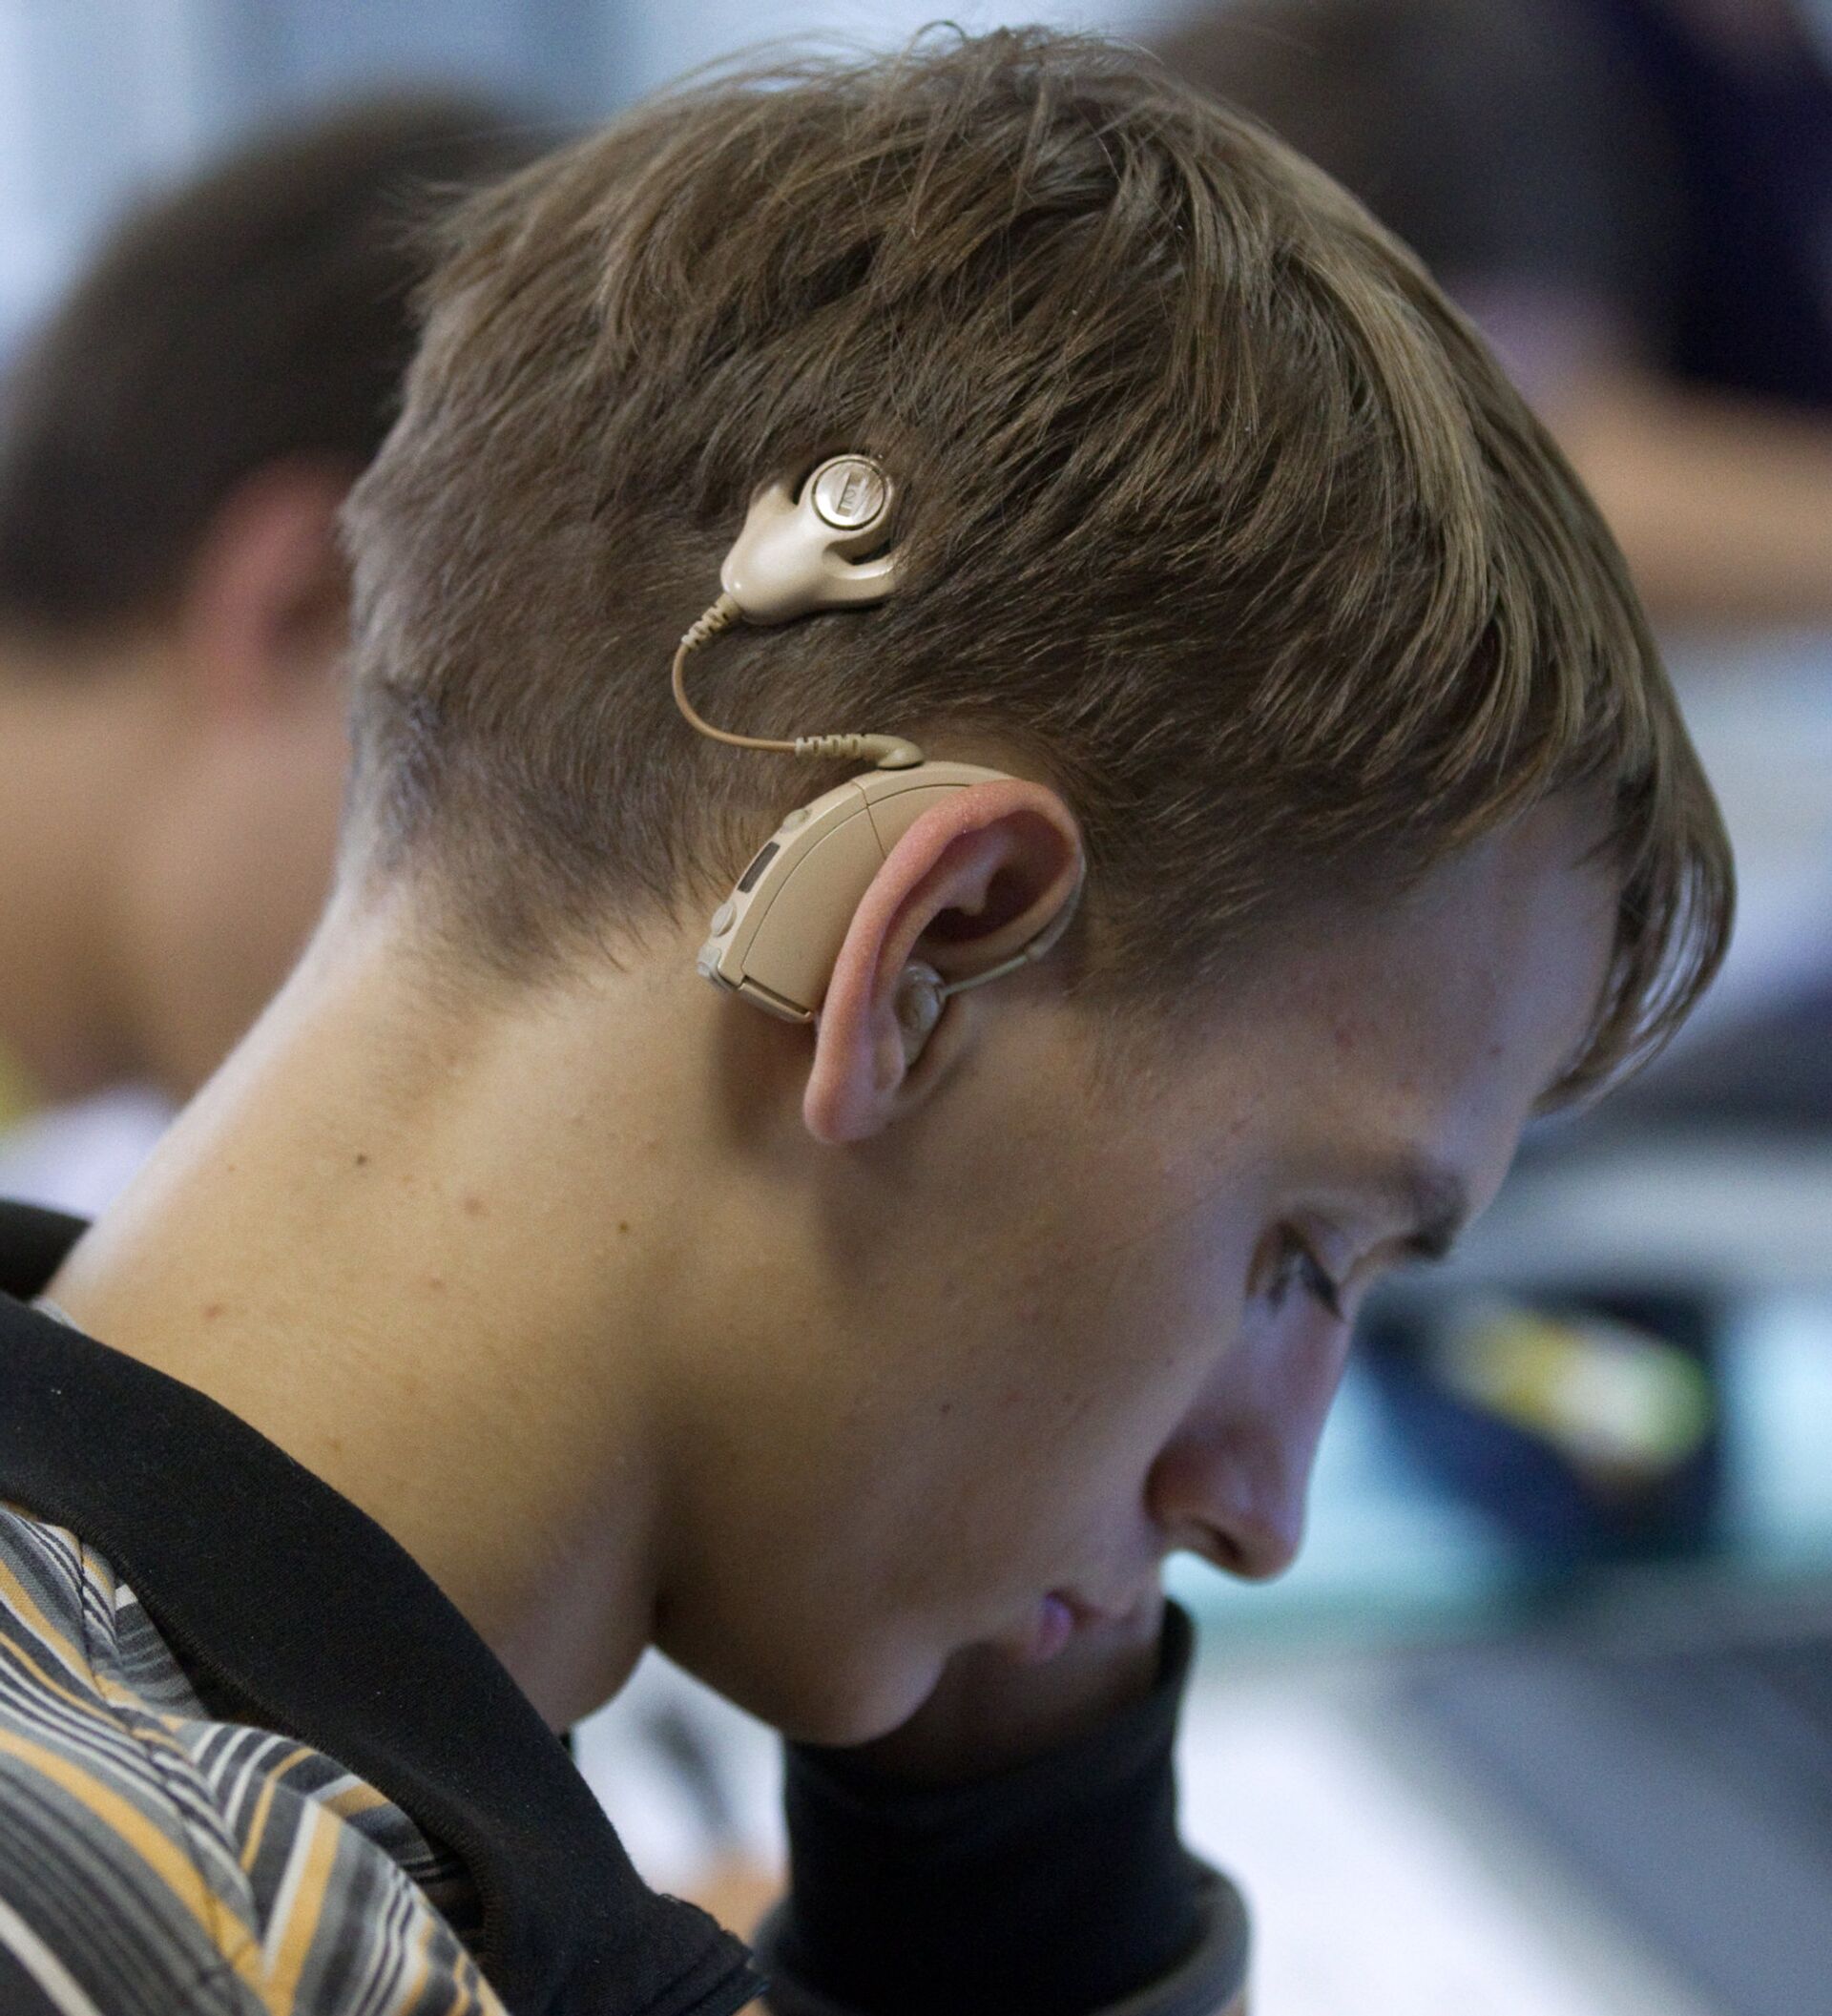 Слабослышащий ученик. Инвалиды по слуху. Люди с нарушением слуха. Слуховые аппараты для инвалидов по слуху. Парень со слуховым аппаратом.